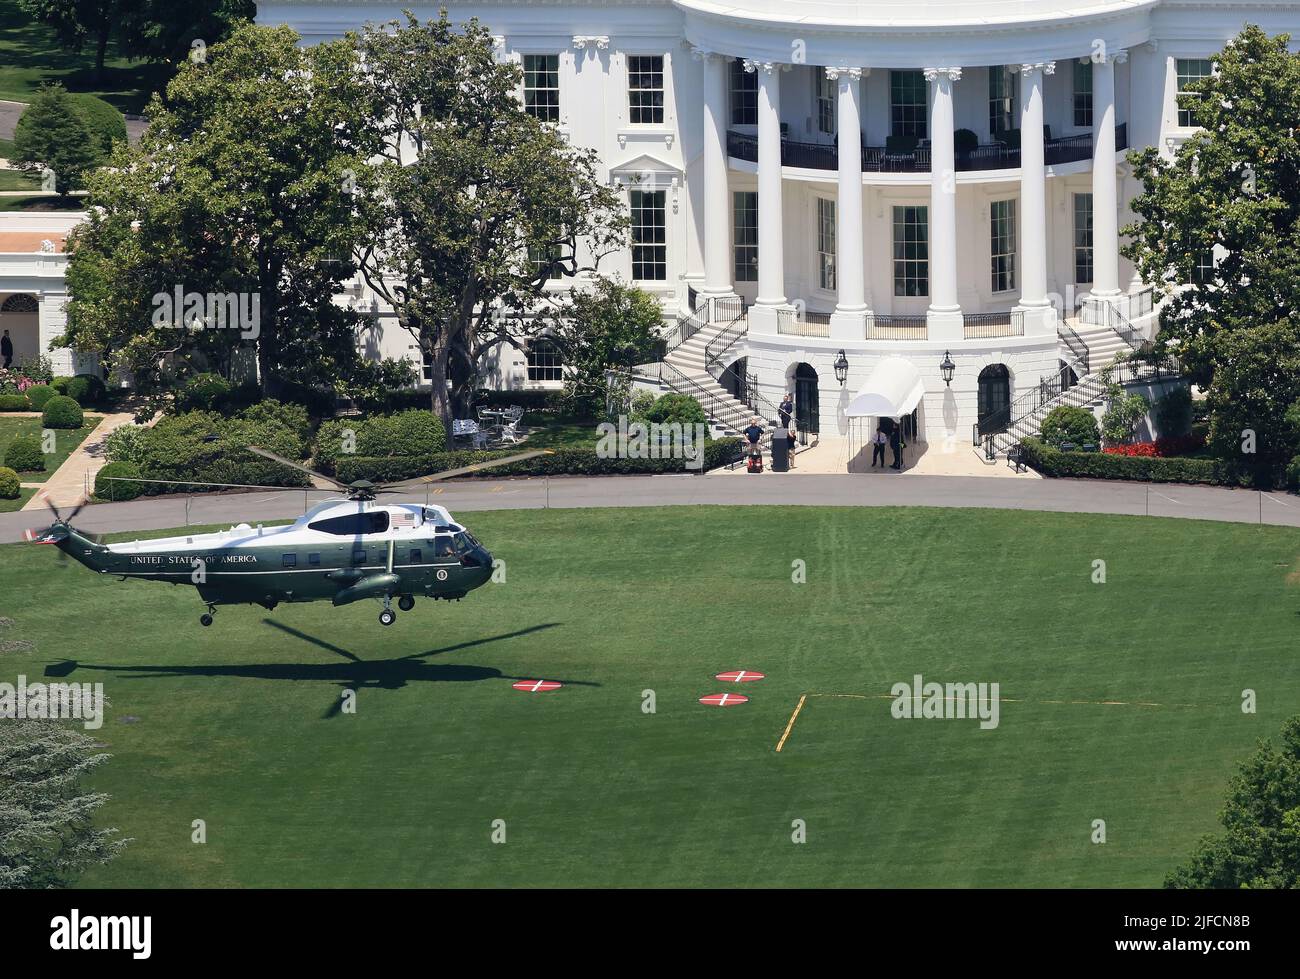 Vista aerea della Marina un elicottero del presidente degli Stati Uniti che atterra sul prato sud della Casa Bianca, Washington DC, Stati Uniti. Foto Stock